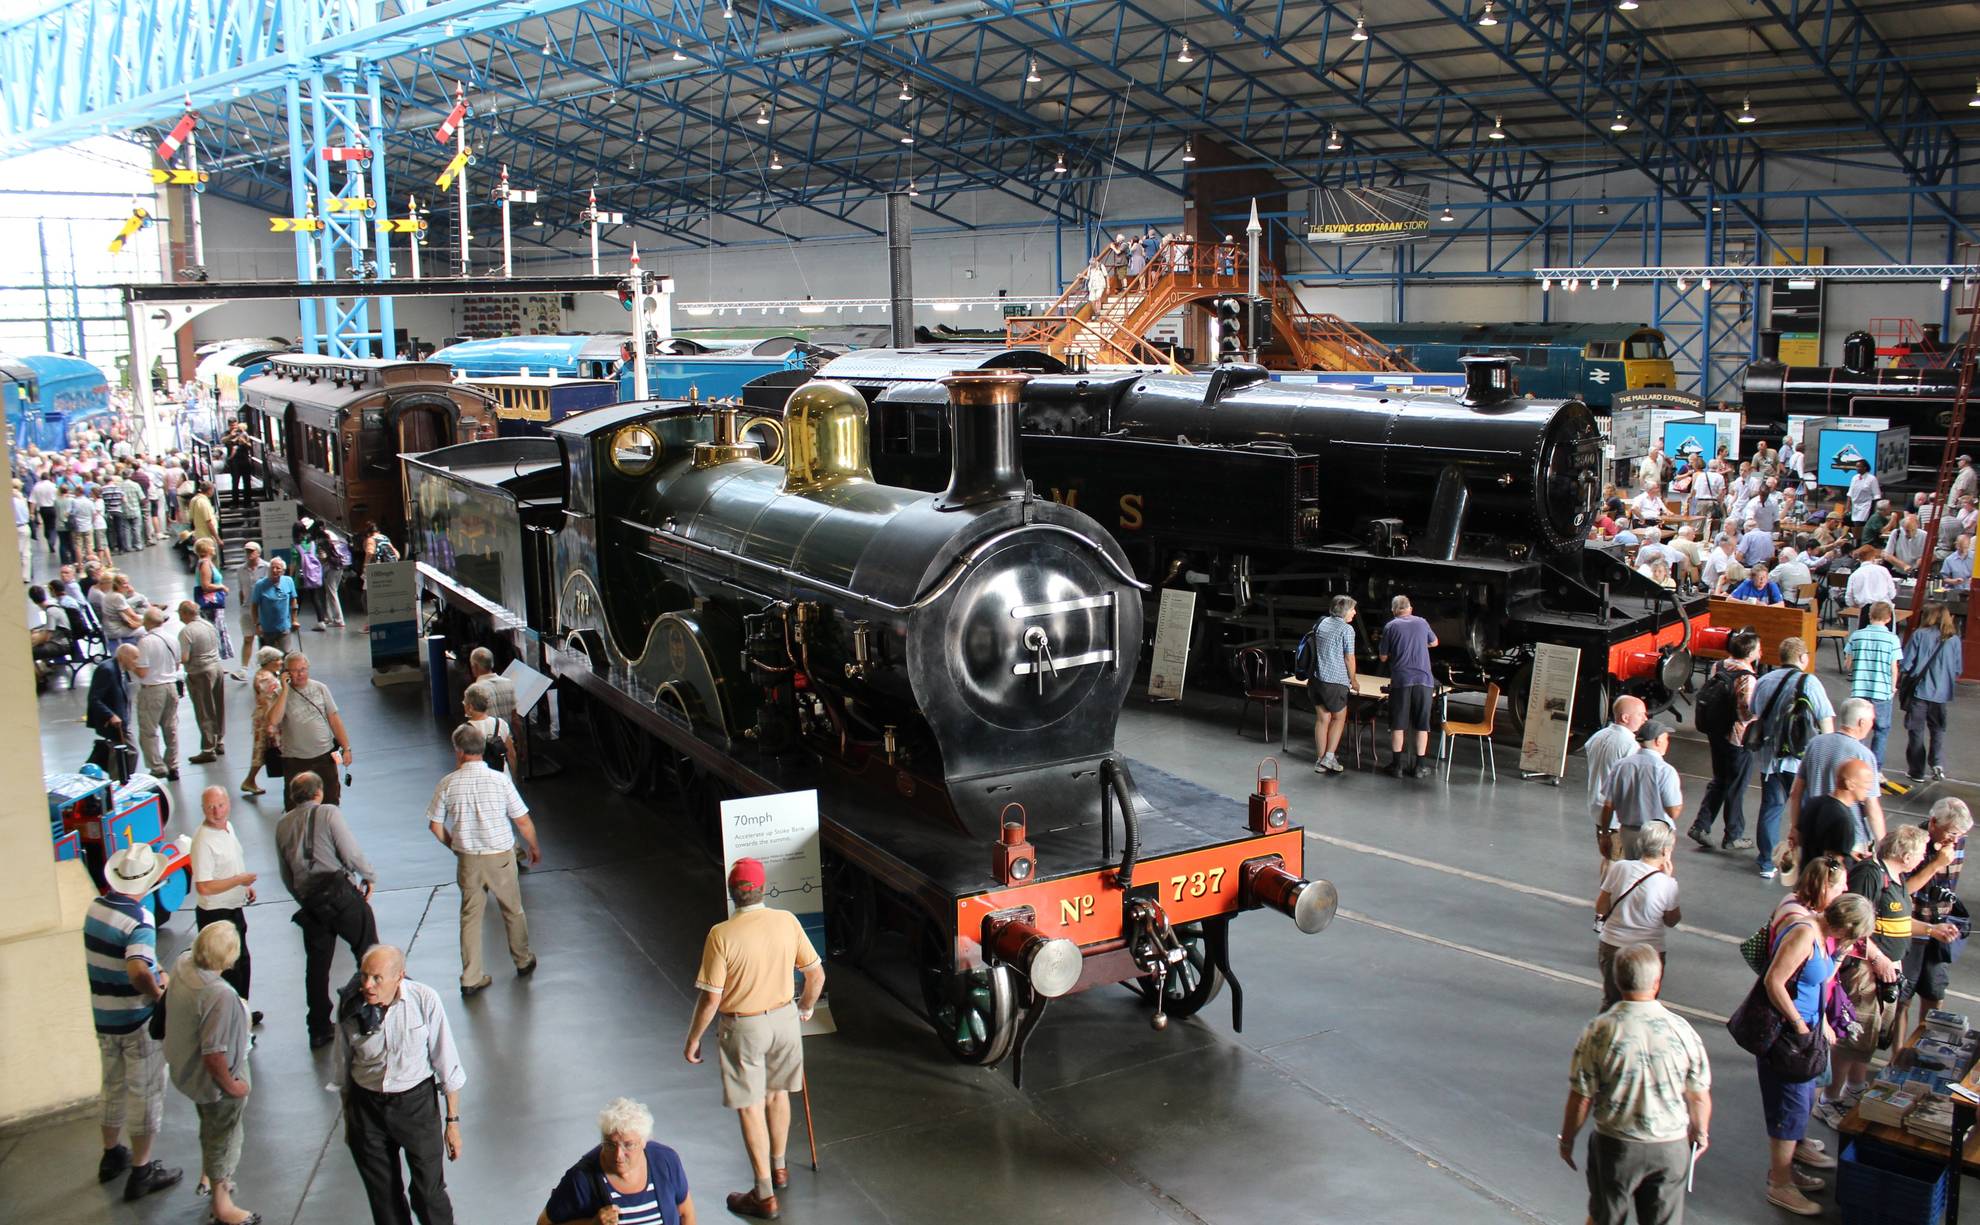 York national railway museum